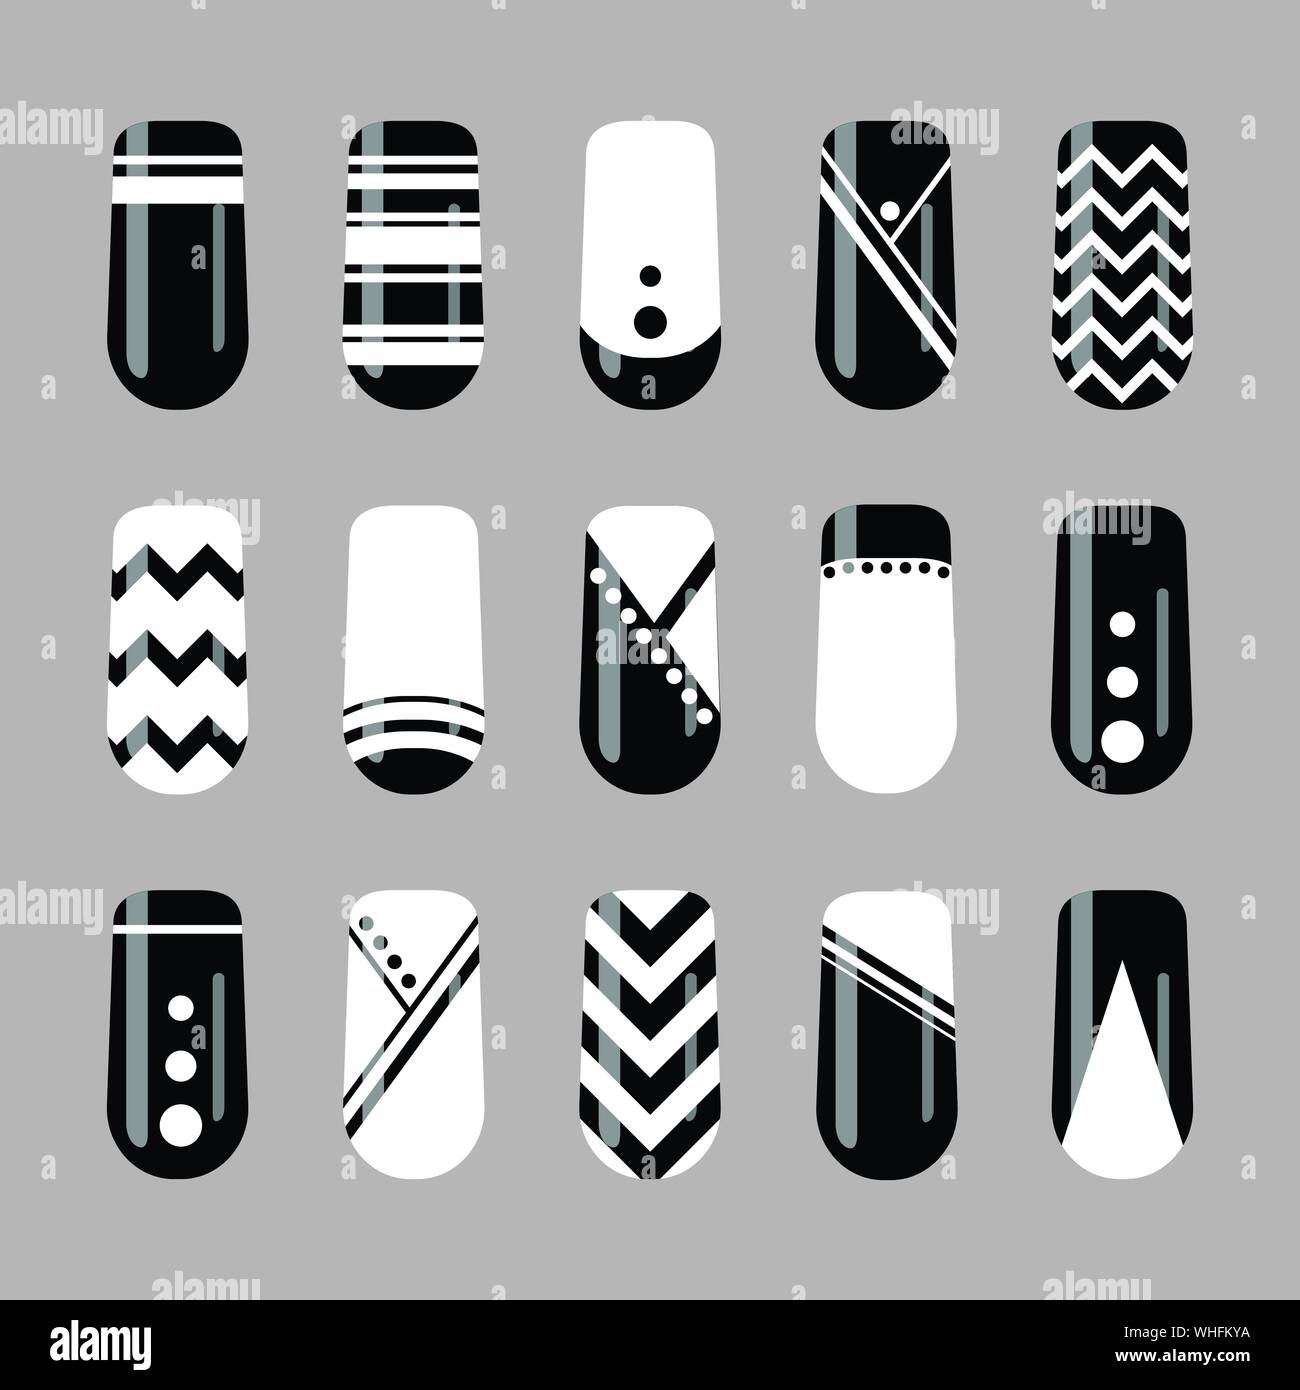 Nail Art Design. Vektor einrichten der Schwarzen und Weißen geometrischen Nägel Vorlage Stock Vektor